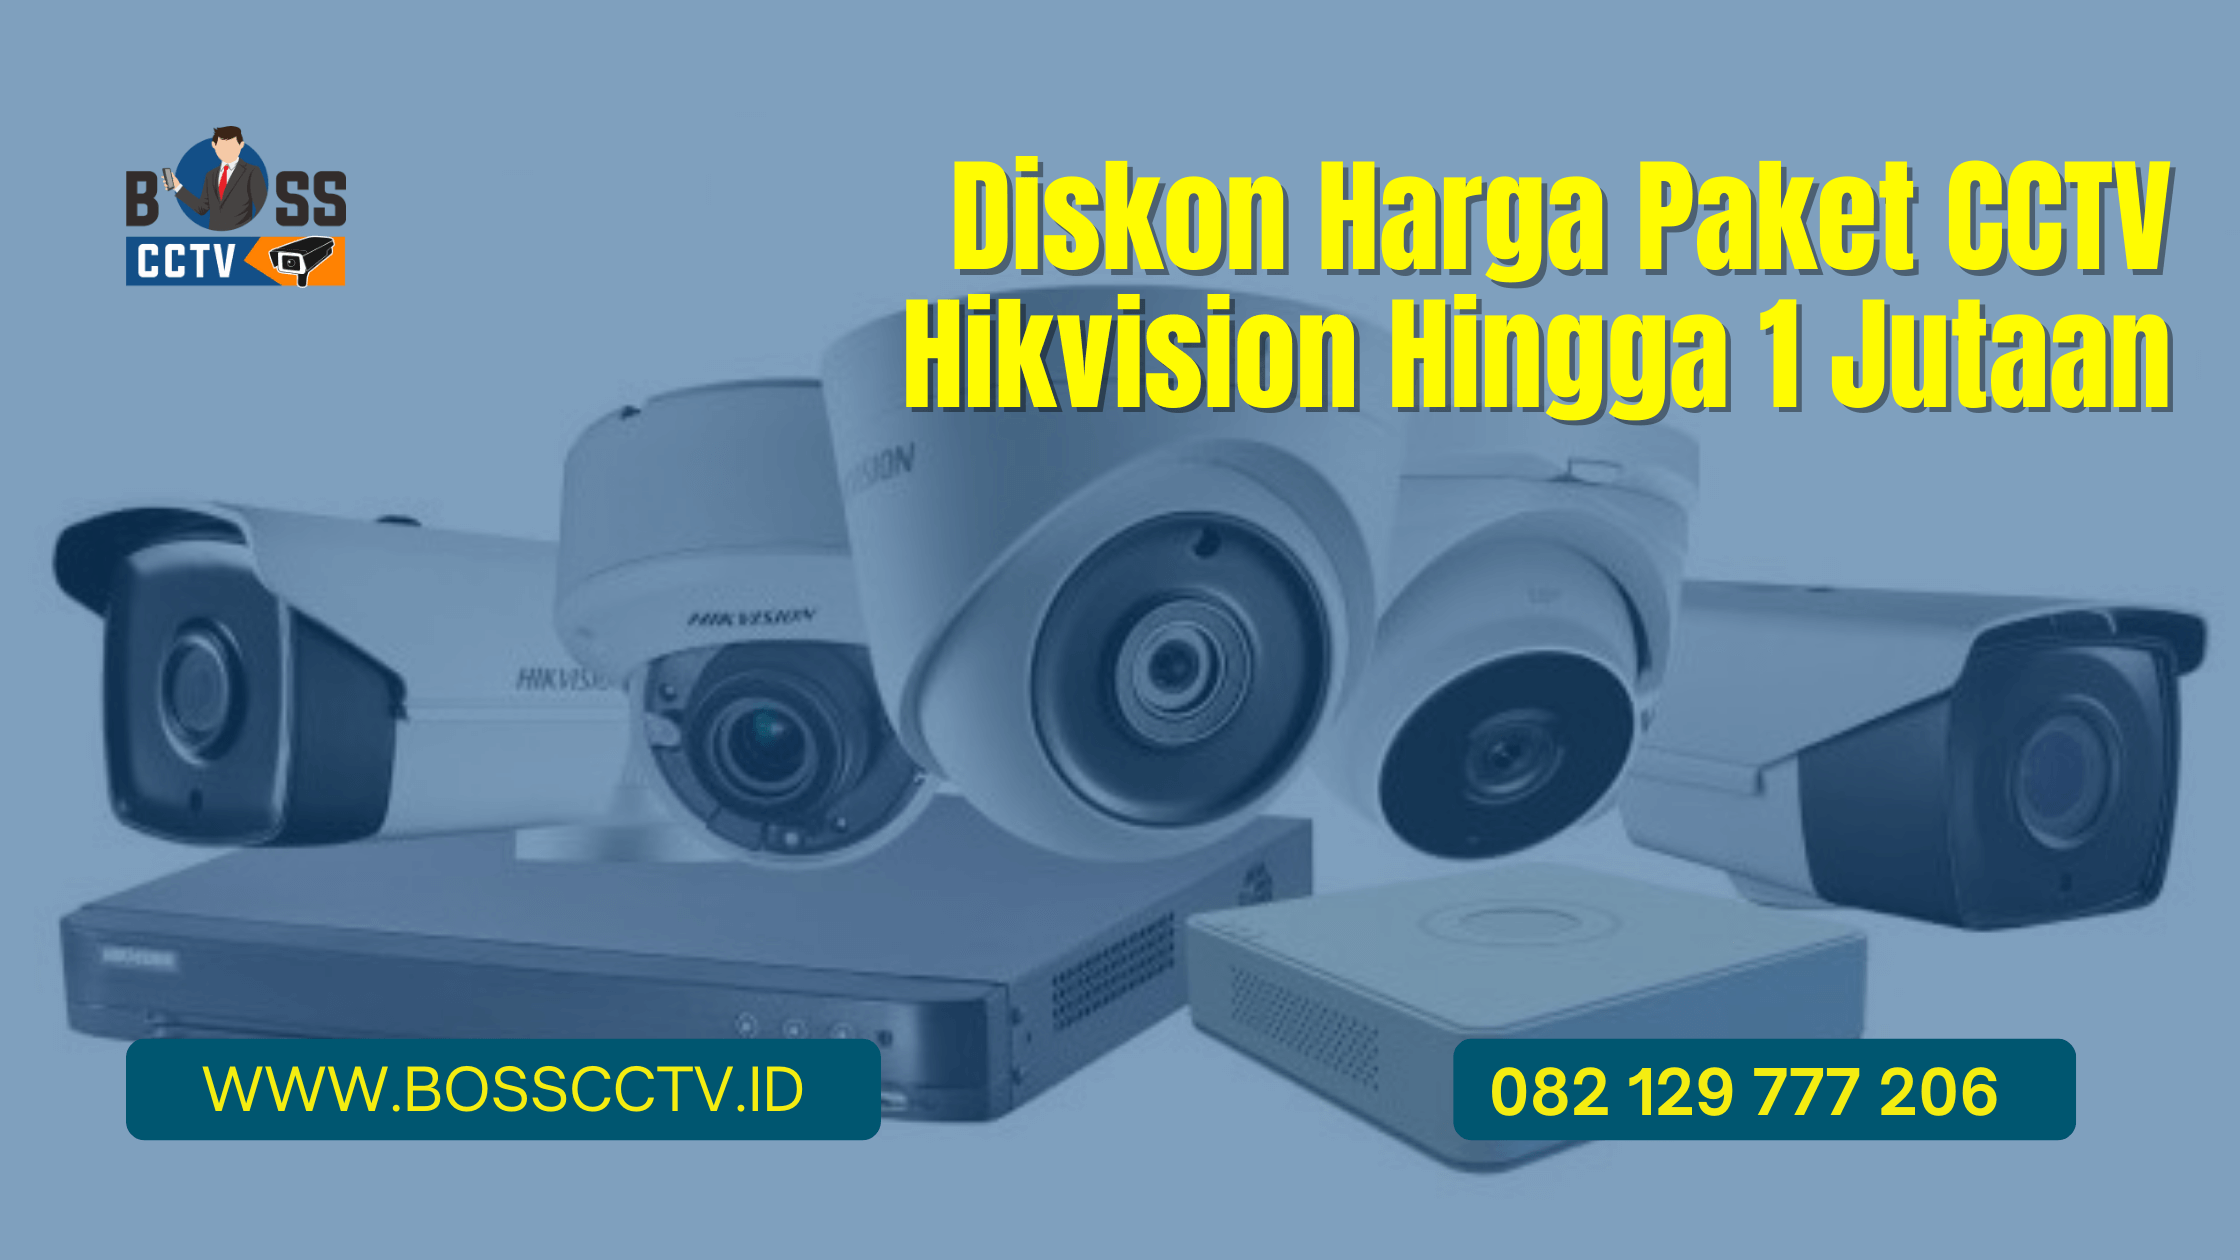 Diskon Harga Paket CCTV Hikvision Hingga 1 Jutaan